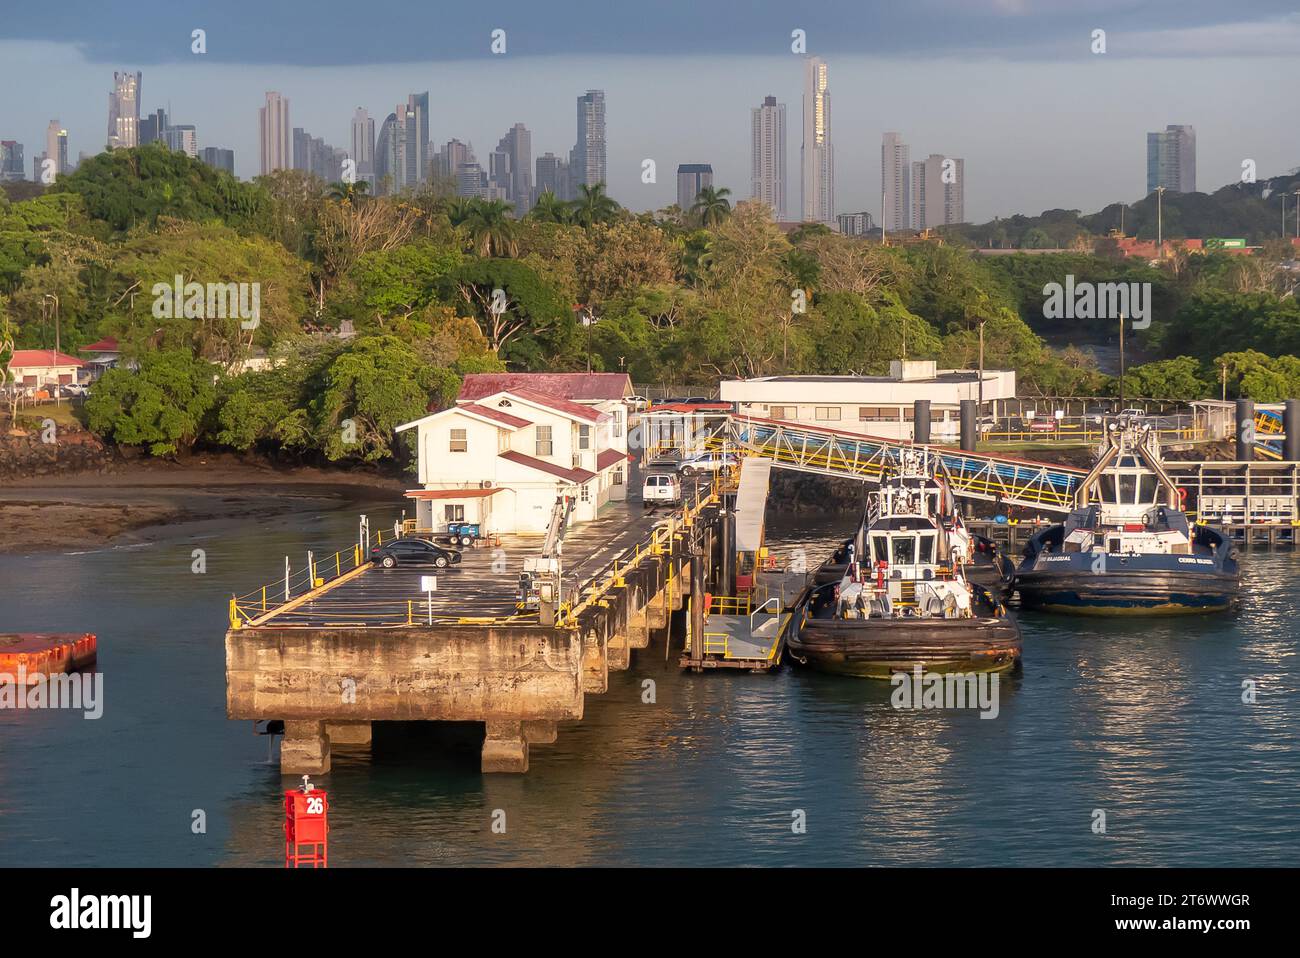 Le canal de Panama : Embarcadero de Diablo, et les tours de grande hauteur de Panama City apparaissant au-dessus de la forêt tropicale. Banque D'Images